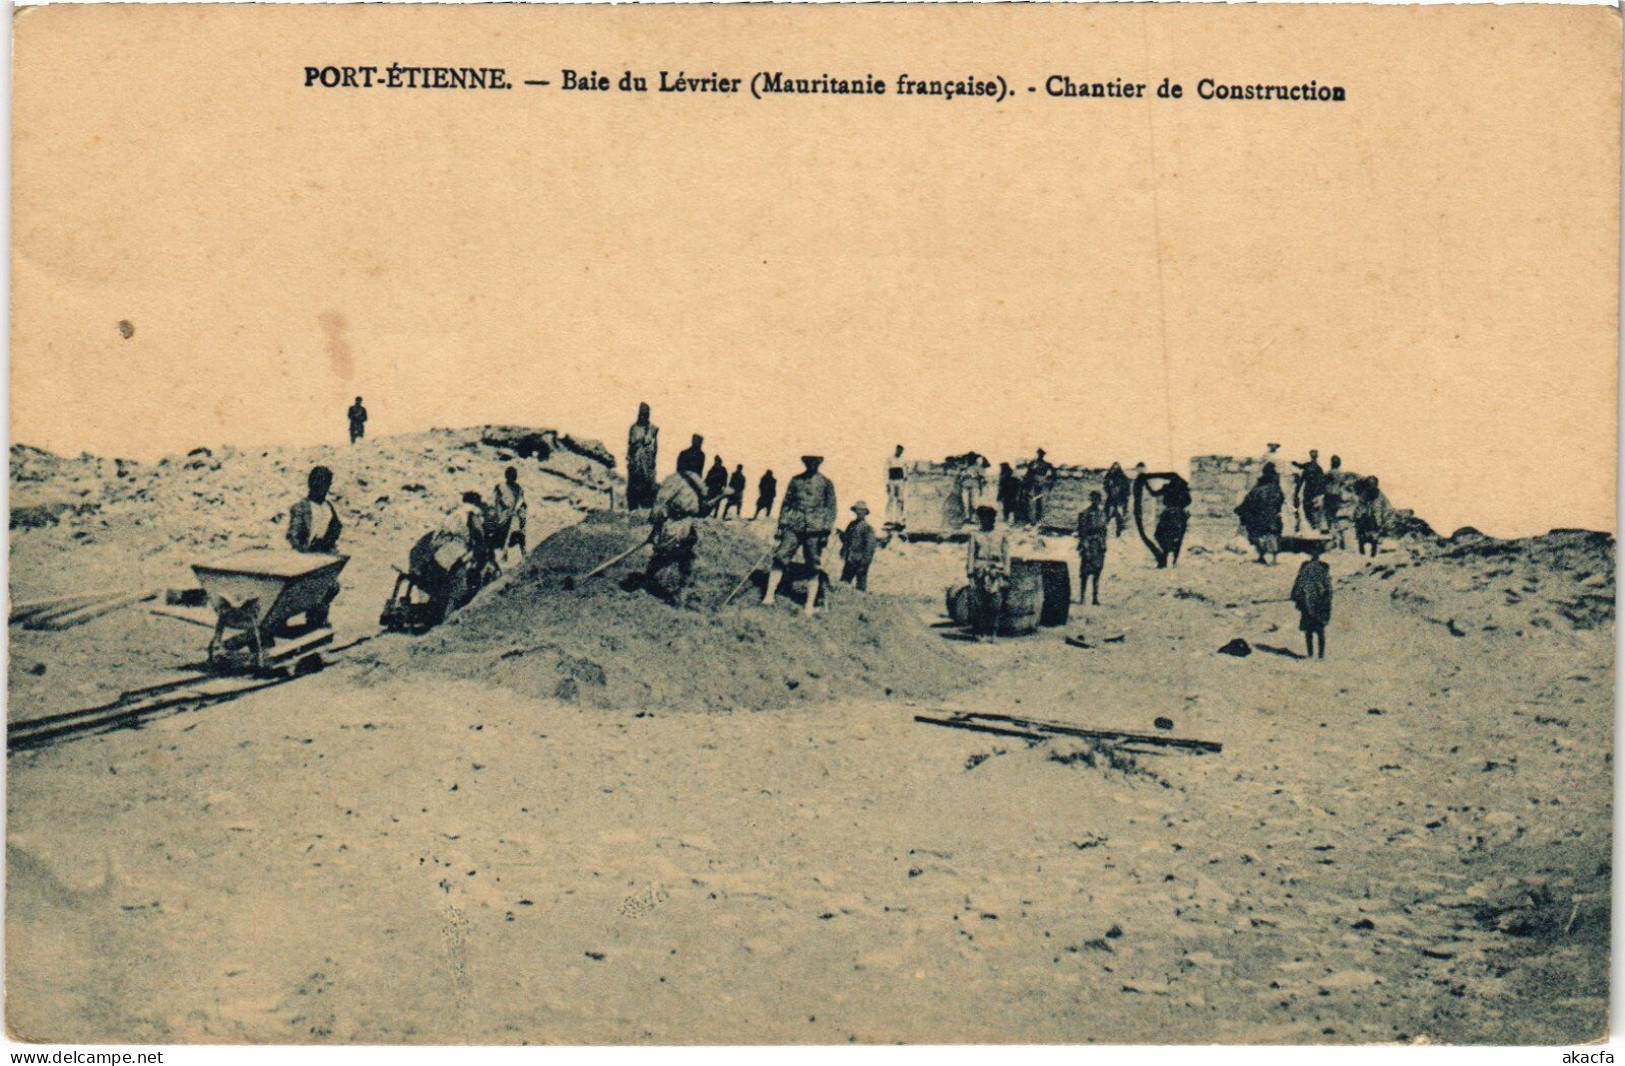 PC BAIE DU LÉVRIER PORT-ETIENNE CHANTIER DE CONSTRUCTION MAURITANIA (a49961) - Mauritanië